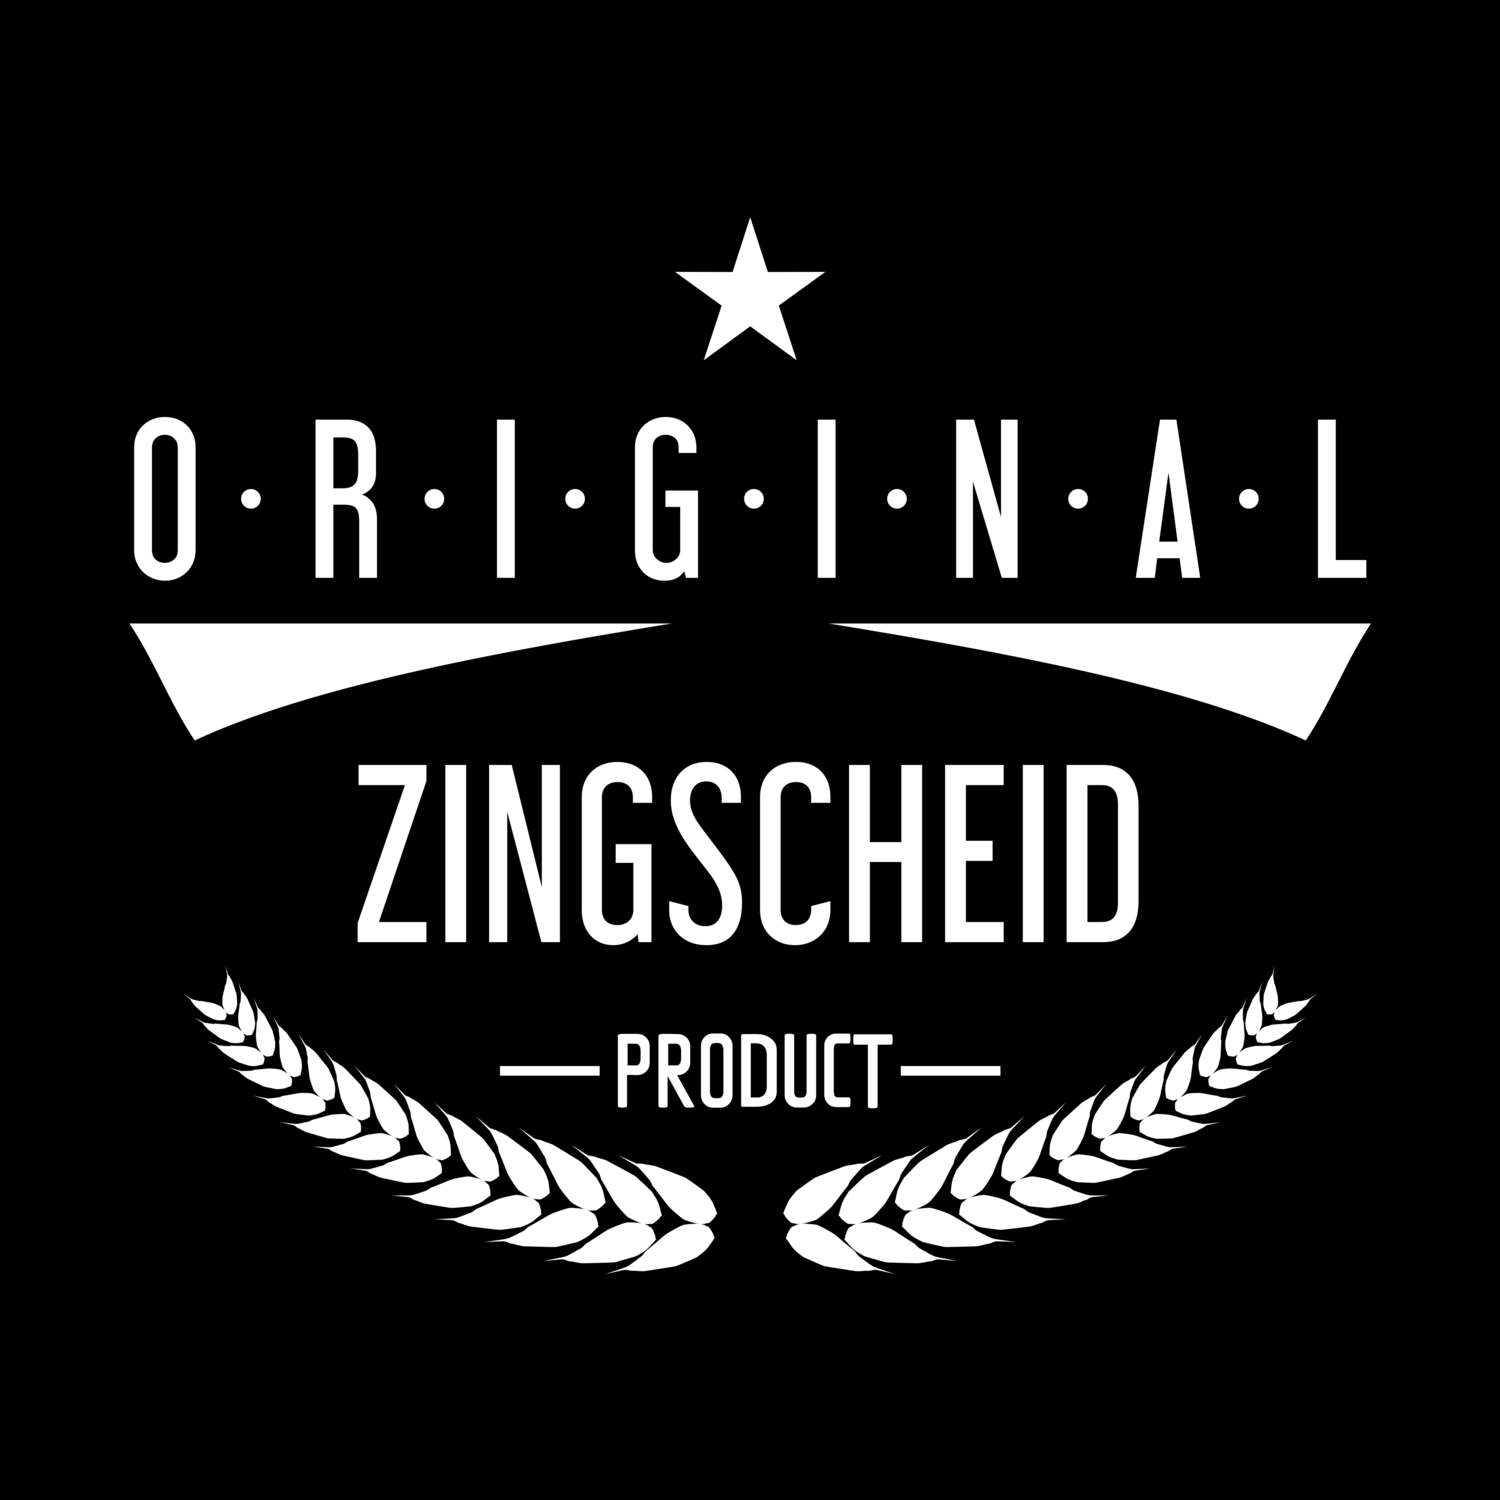 Zingscheid T-Shirt »Original Product«